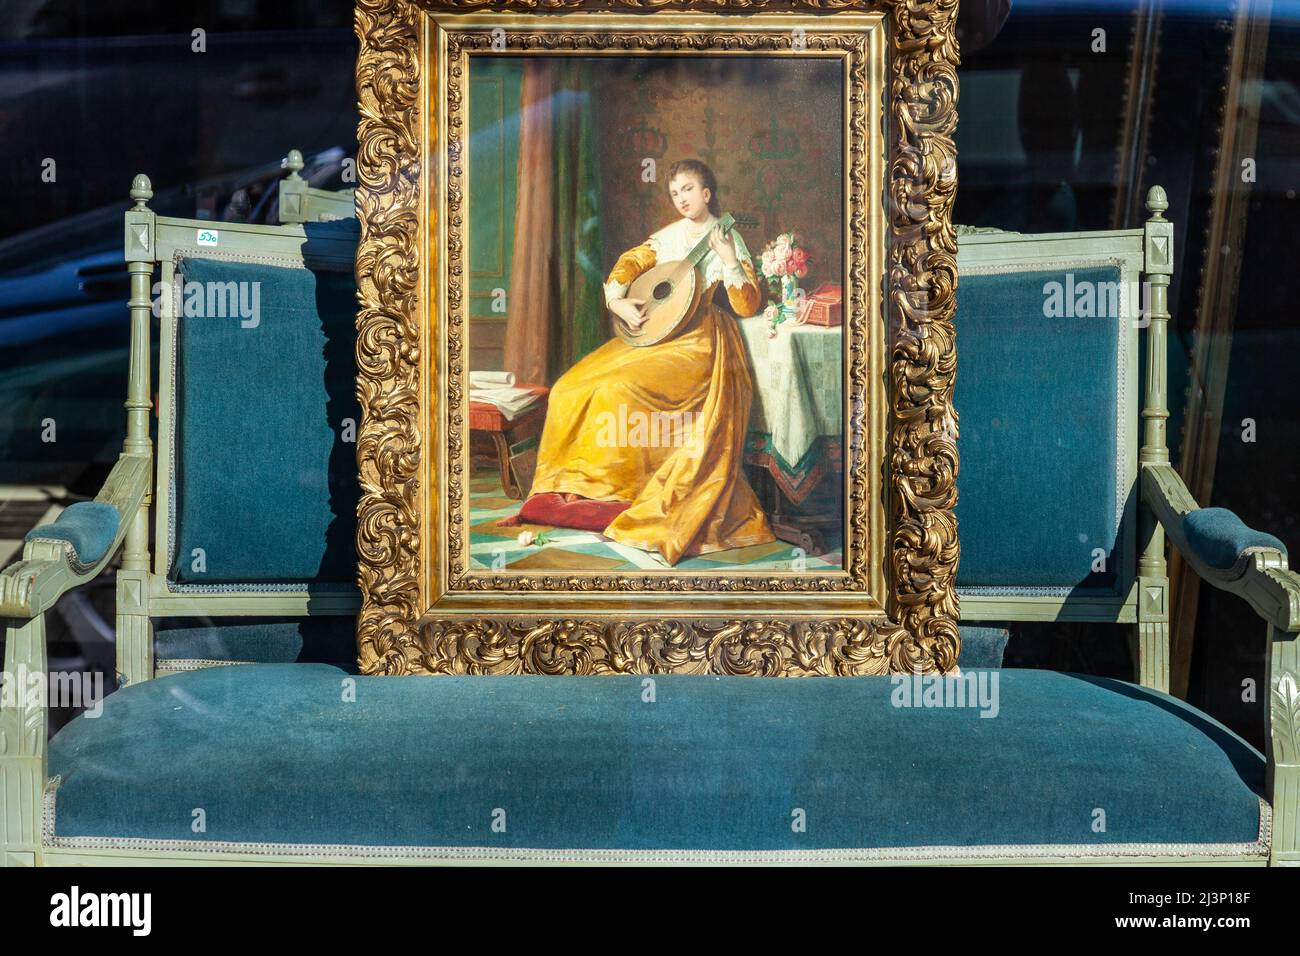 Peinture de style Renaissance, placée sur un vieux canapé, dans la fenêtre d'un antiquaire à Bruxelles Banque D'Images